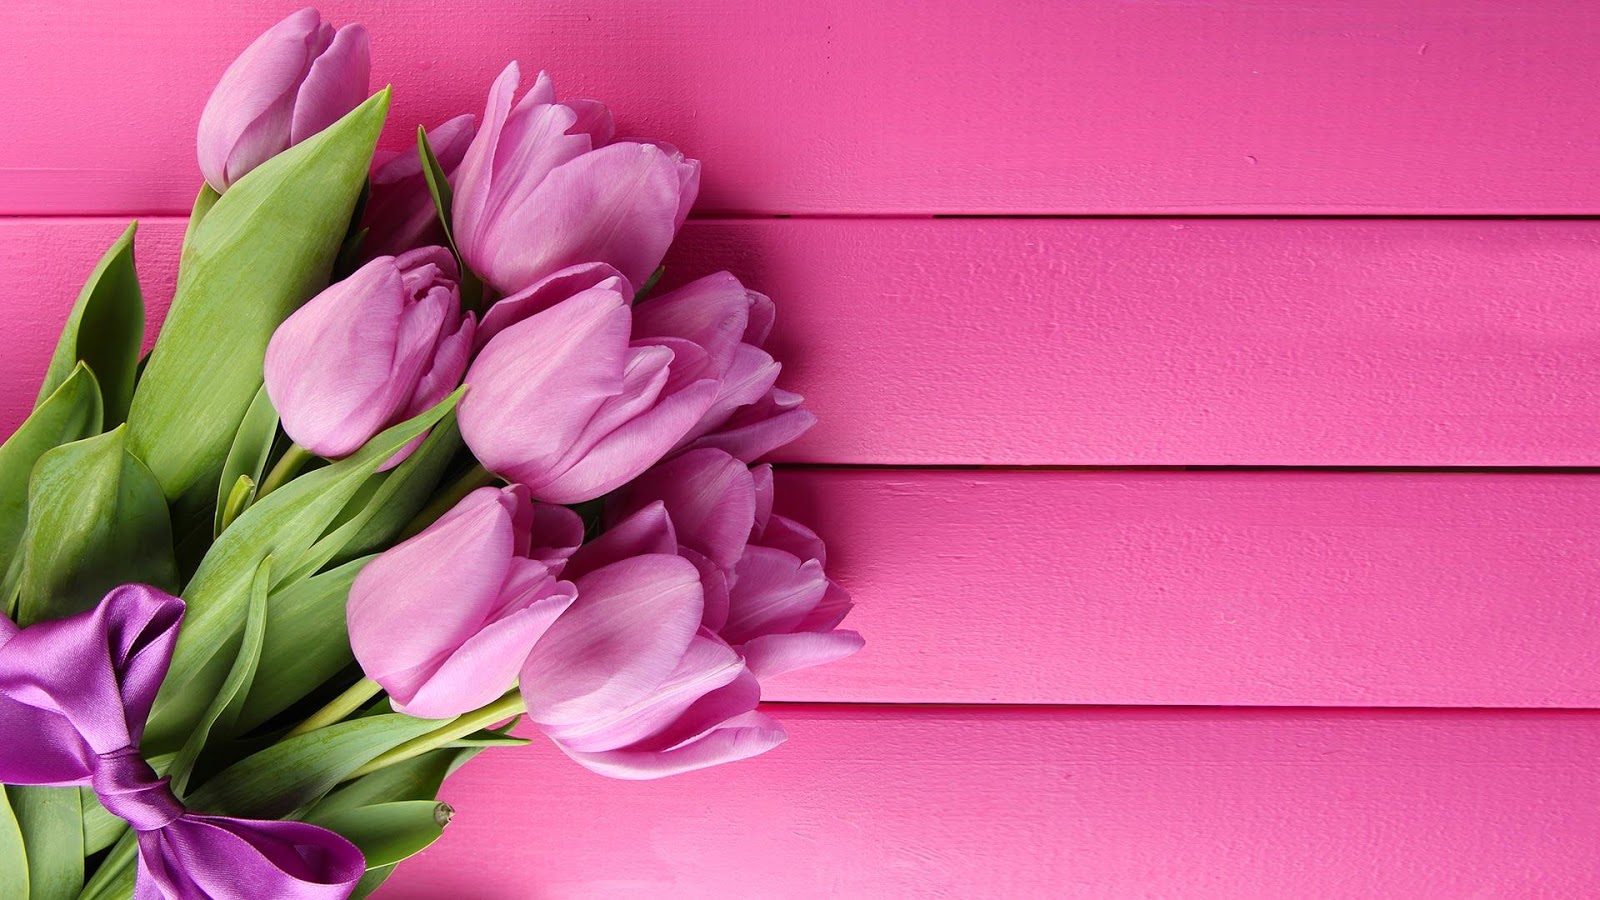 Tulips Bouquet For Valentine's Day - AspirantSG